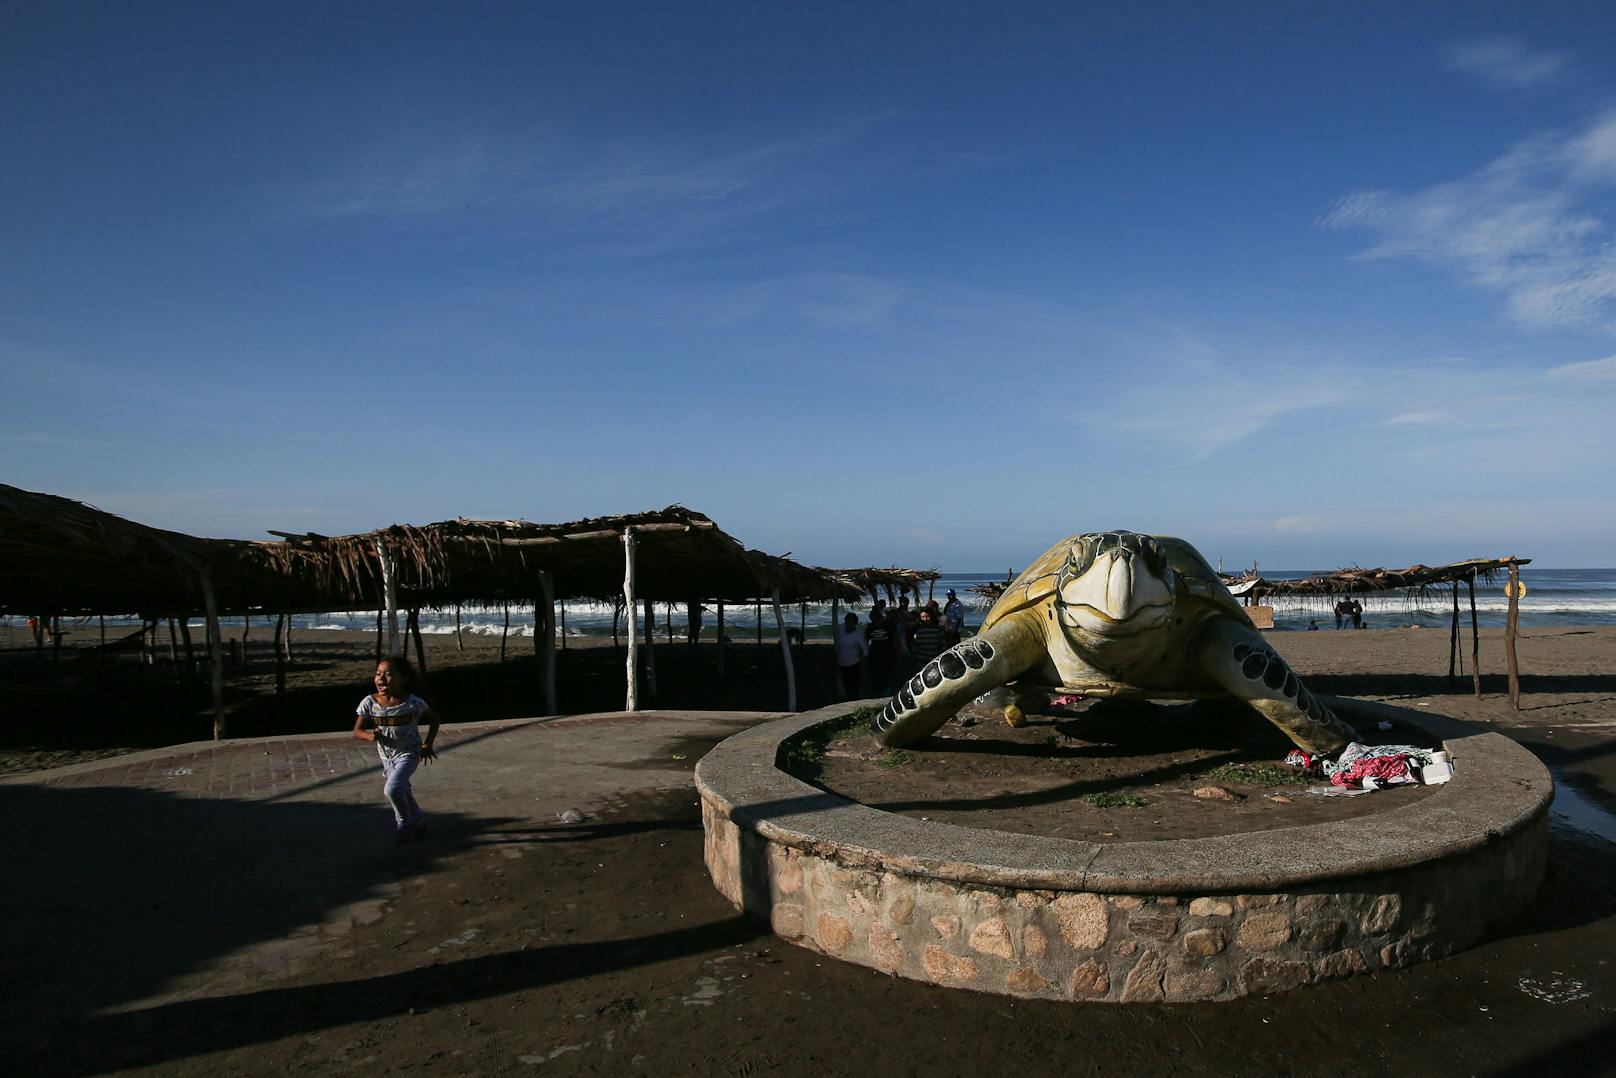 Ein Kind läuft neben der Figur einer Meeresschildkröte am Eingang des Strandschutzgebietes in Puerto Arista, Mexiko.